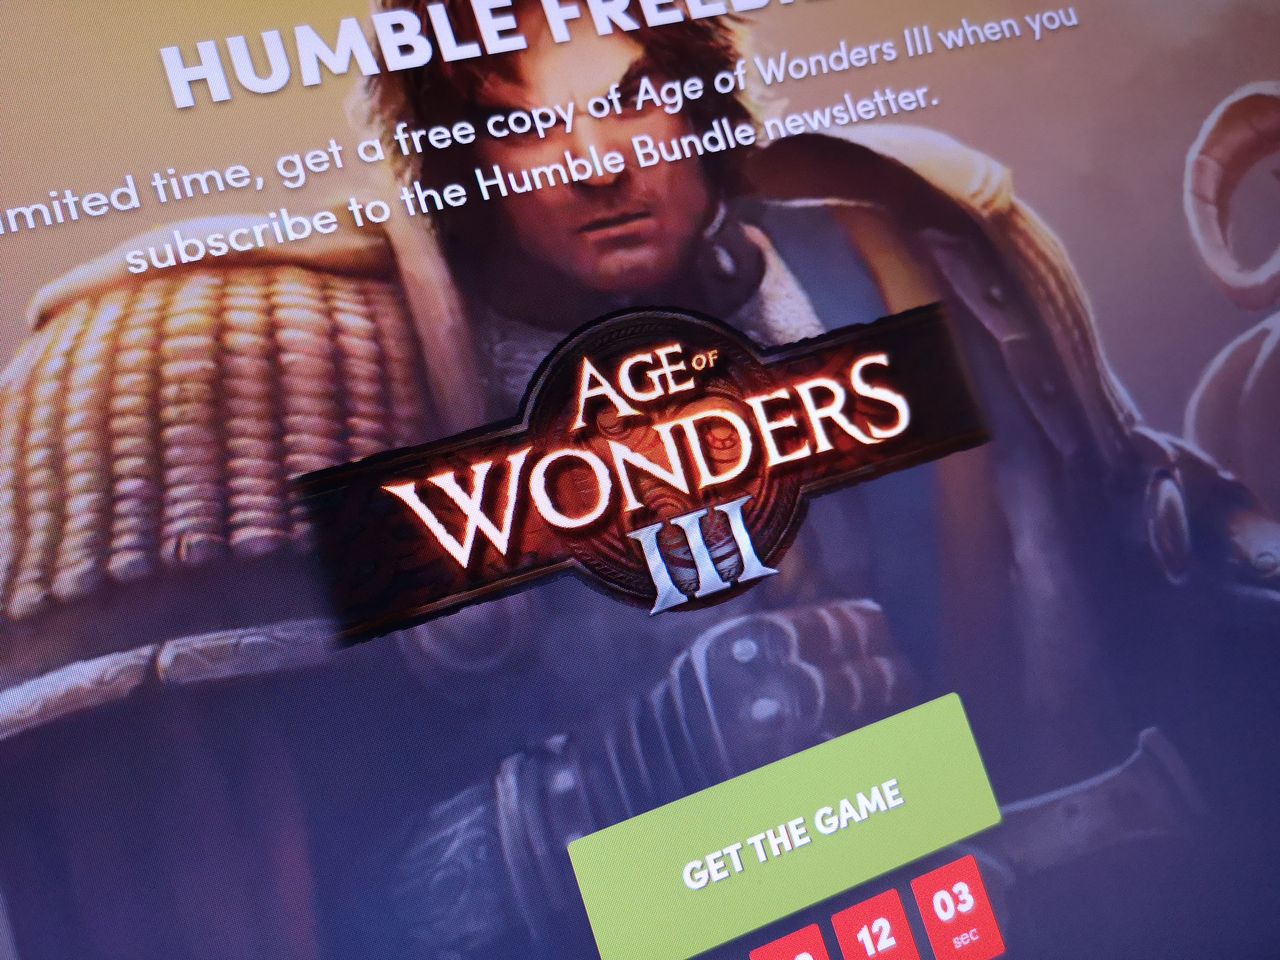 Age of Wonders III do pobrania za darmo. Zostało niewiele czasu